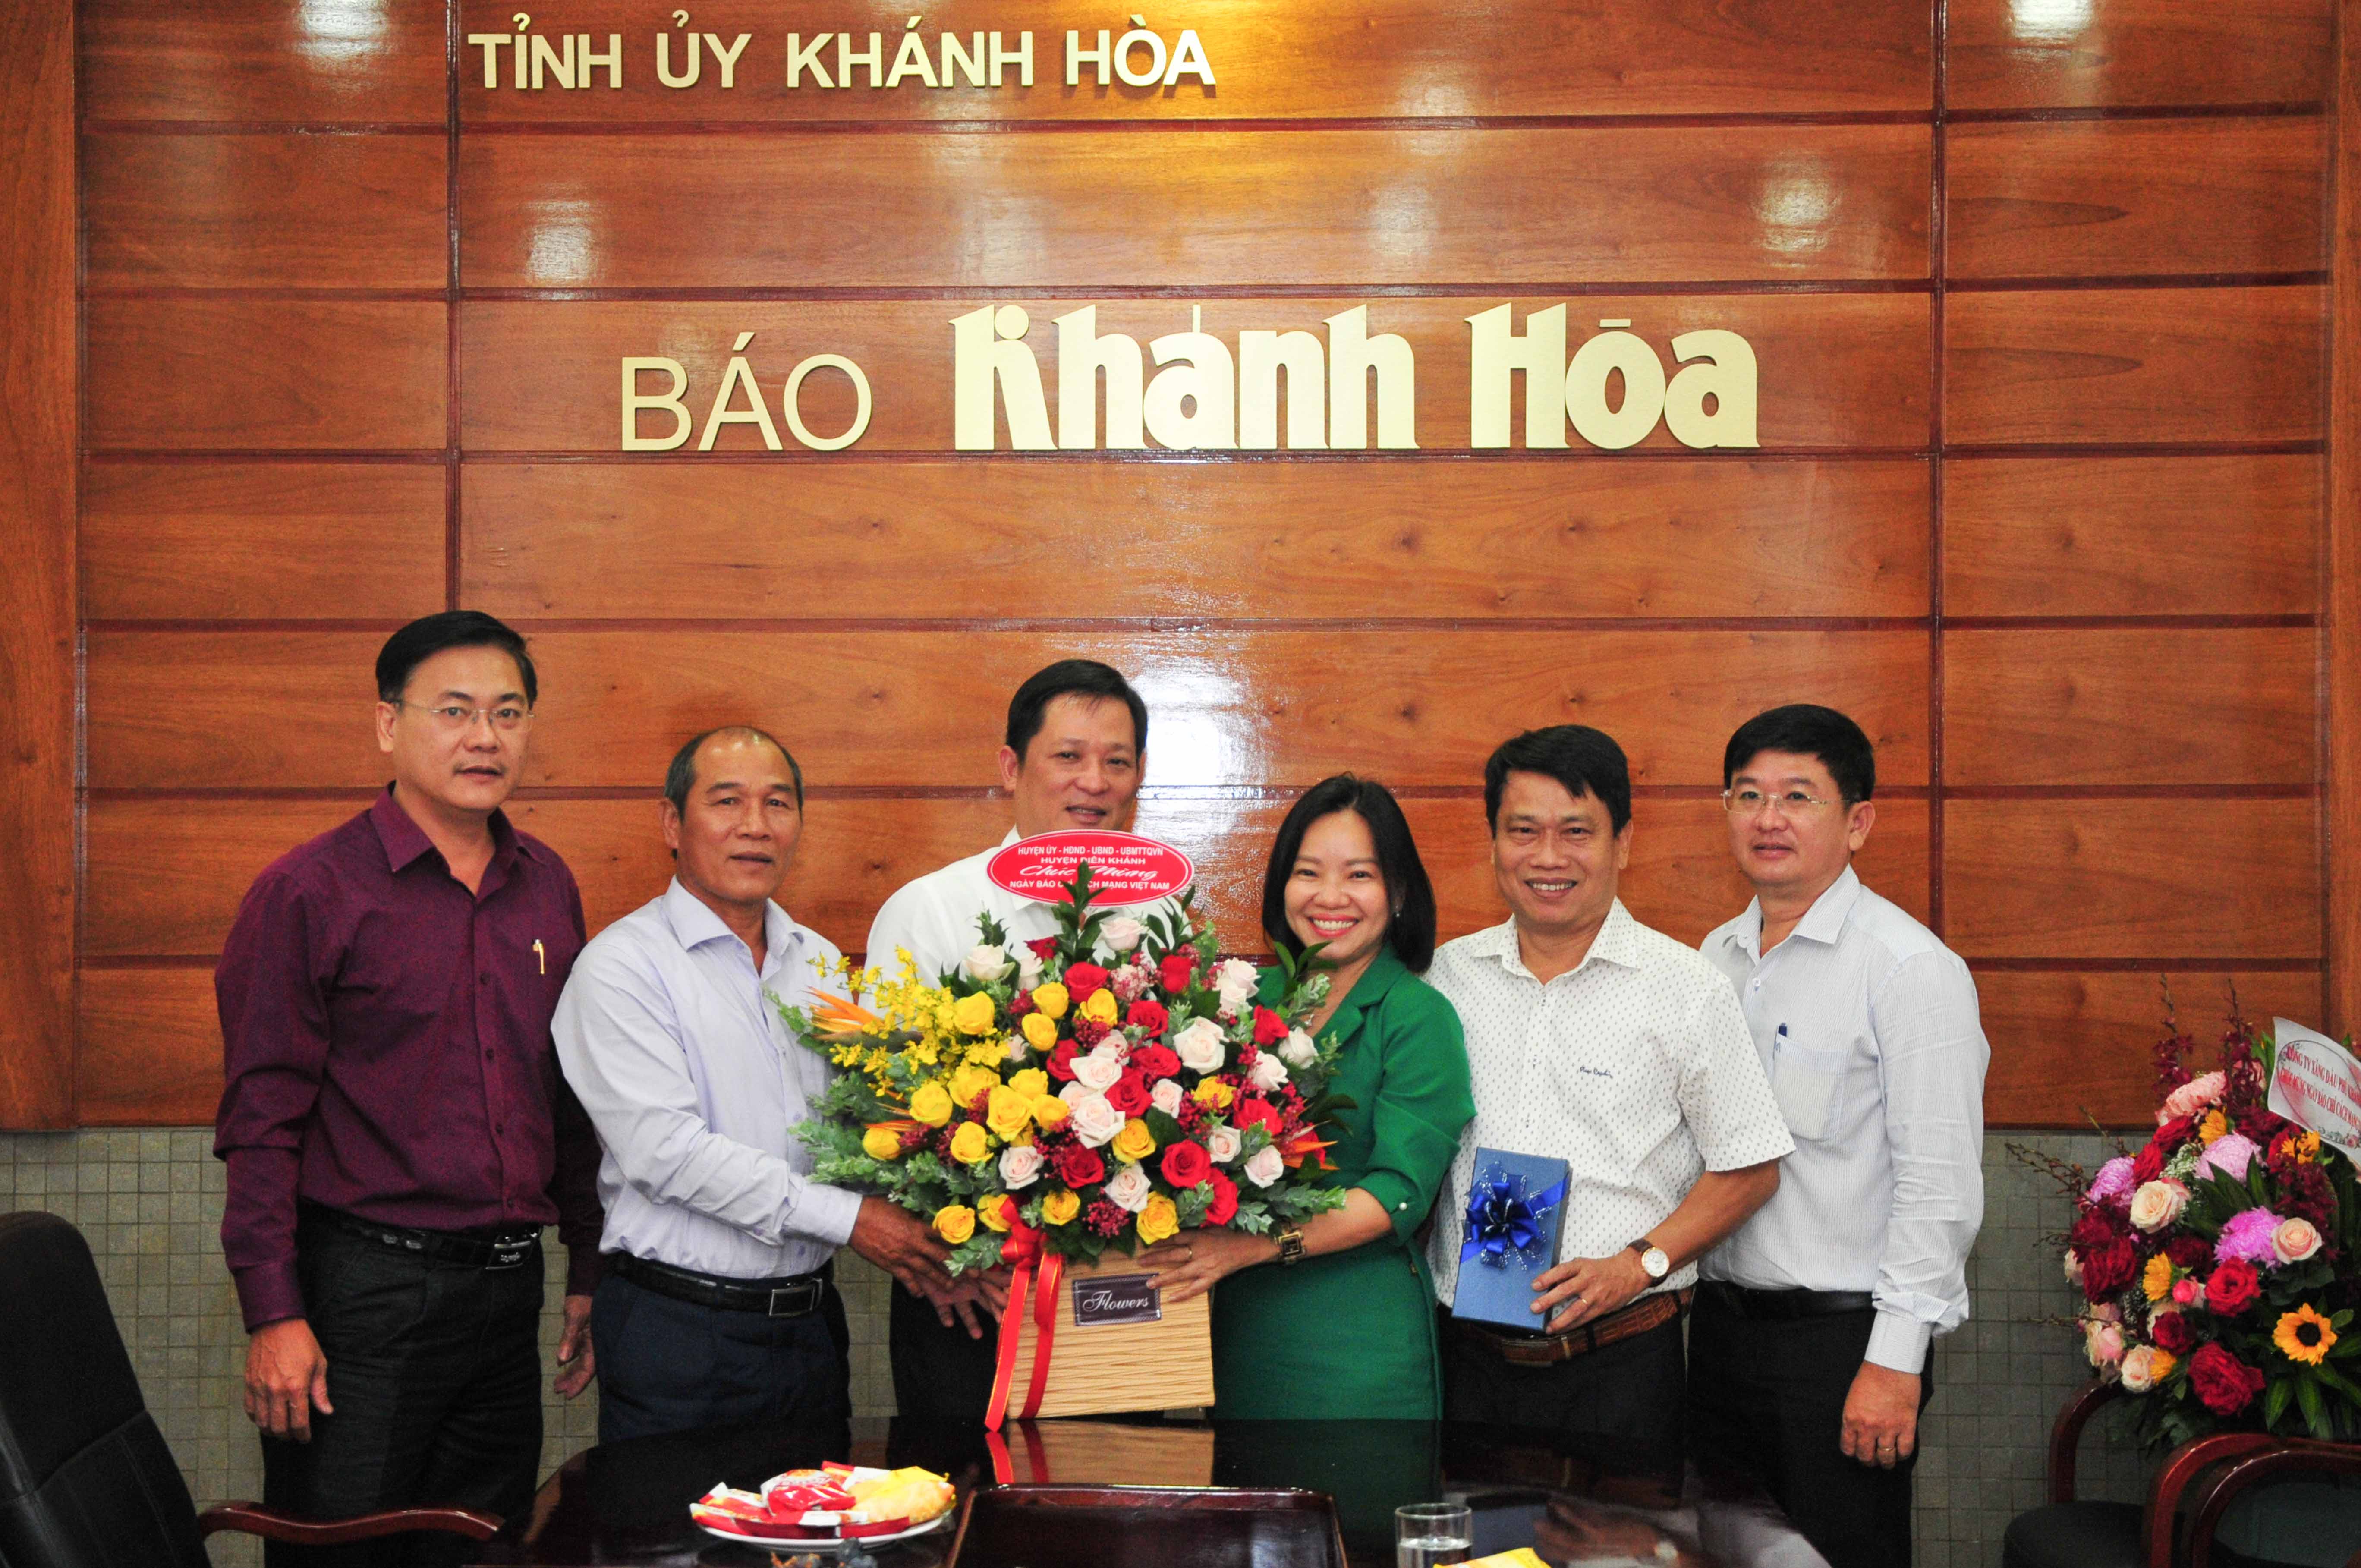 Lãnh đạo các đơn vị, địa phương và doanh nghiệp thăm, chúc mừng Báo Khánh Hòa